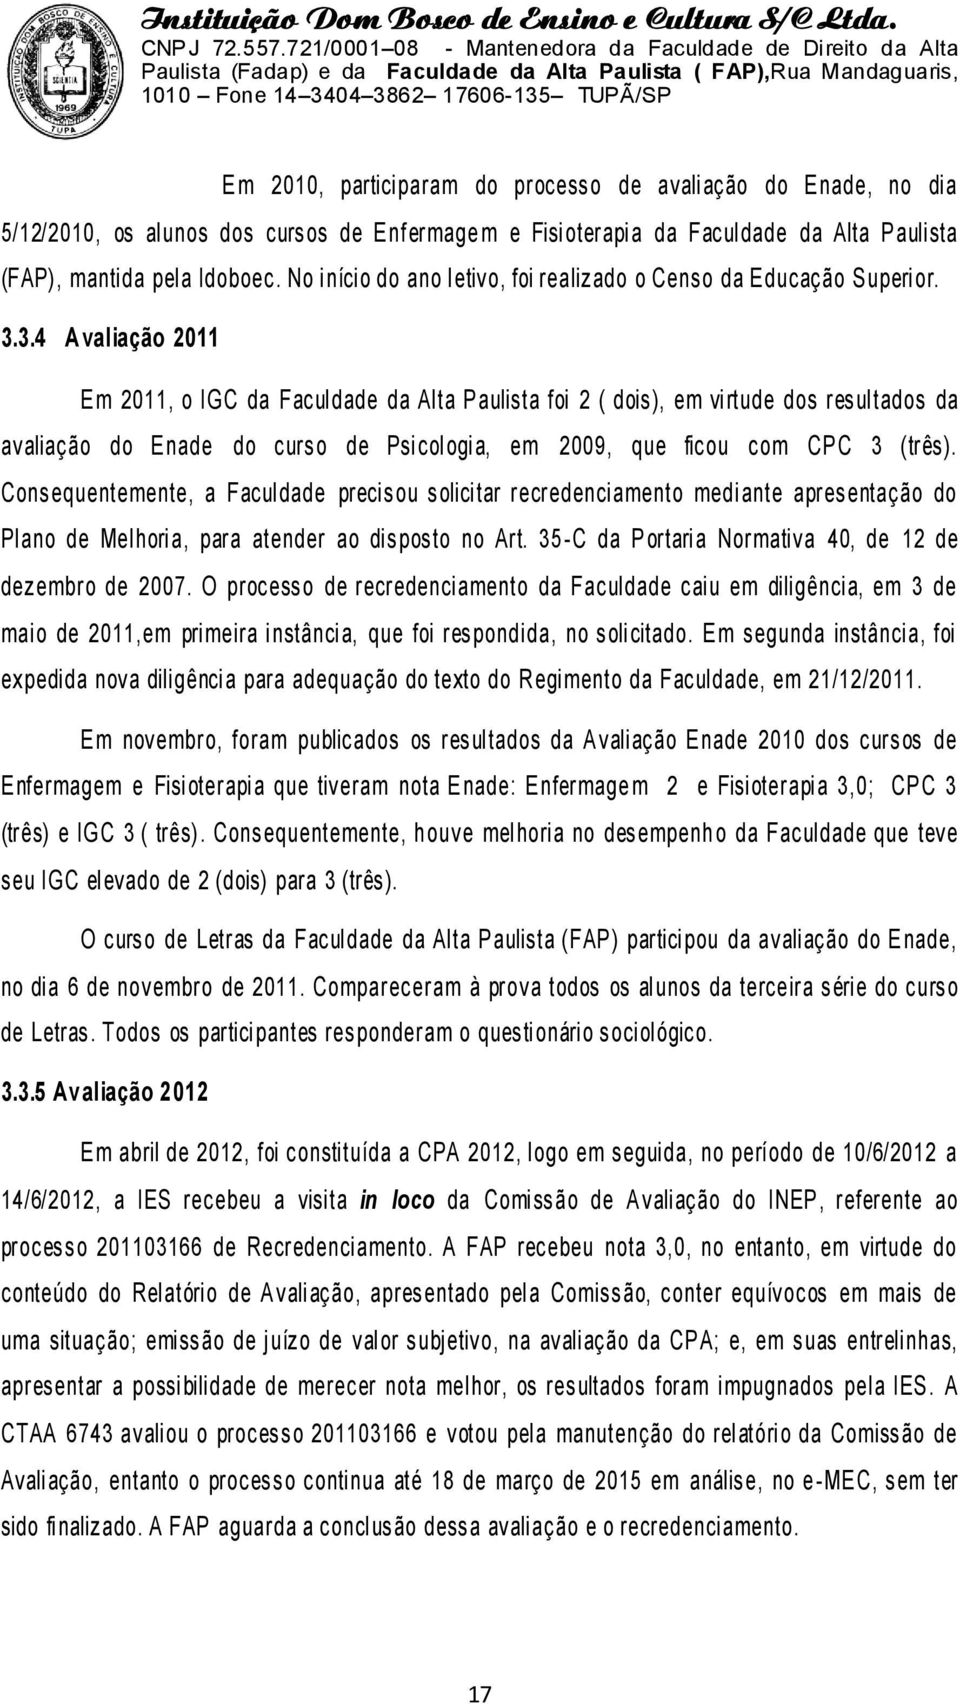 3.4 Avaliação 2011 Em 2011, o IGC da Facul dade da Al ta Paulista foi 2 ( dois), em vi rtude dos resul tados da avaliação do Enade do curso de Psi col ogi a, em 2009, que ficou com CPC 3 (três).